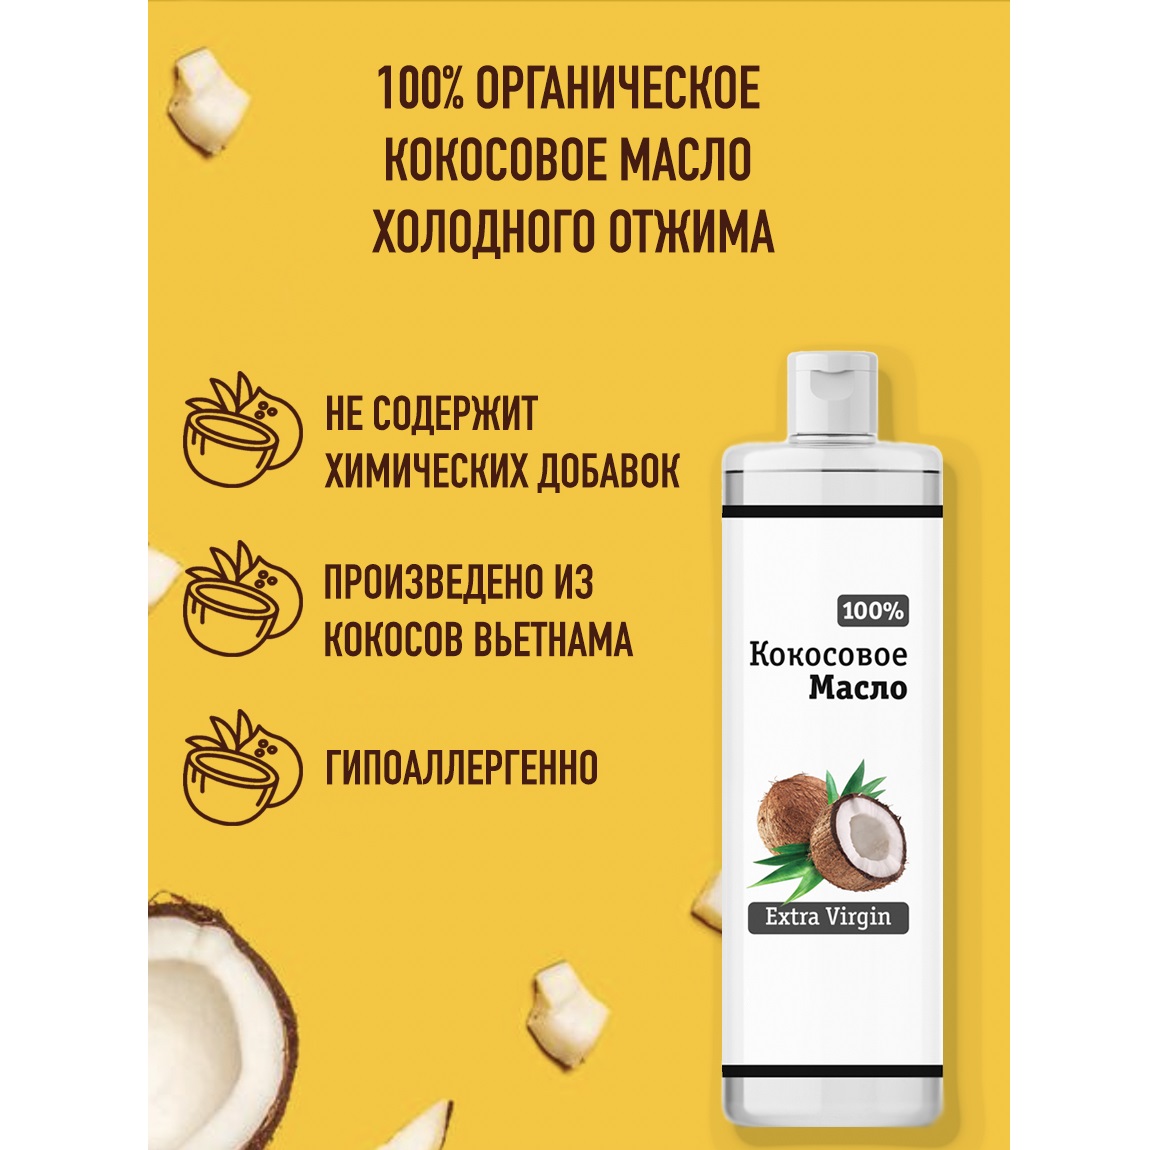 Кокосовое масло Smart Cosmetics Для тела и волос 100% натуральное нерафинированное холодного отжима Extra Virgin 250 мл - фото 2